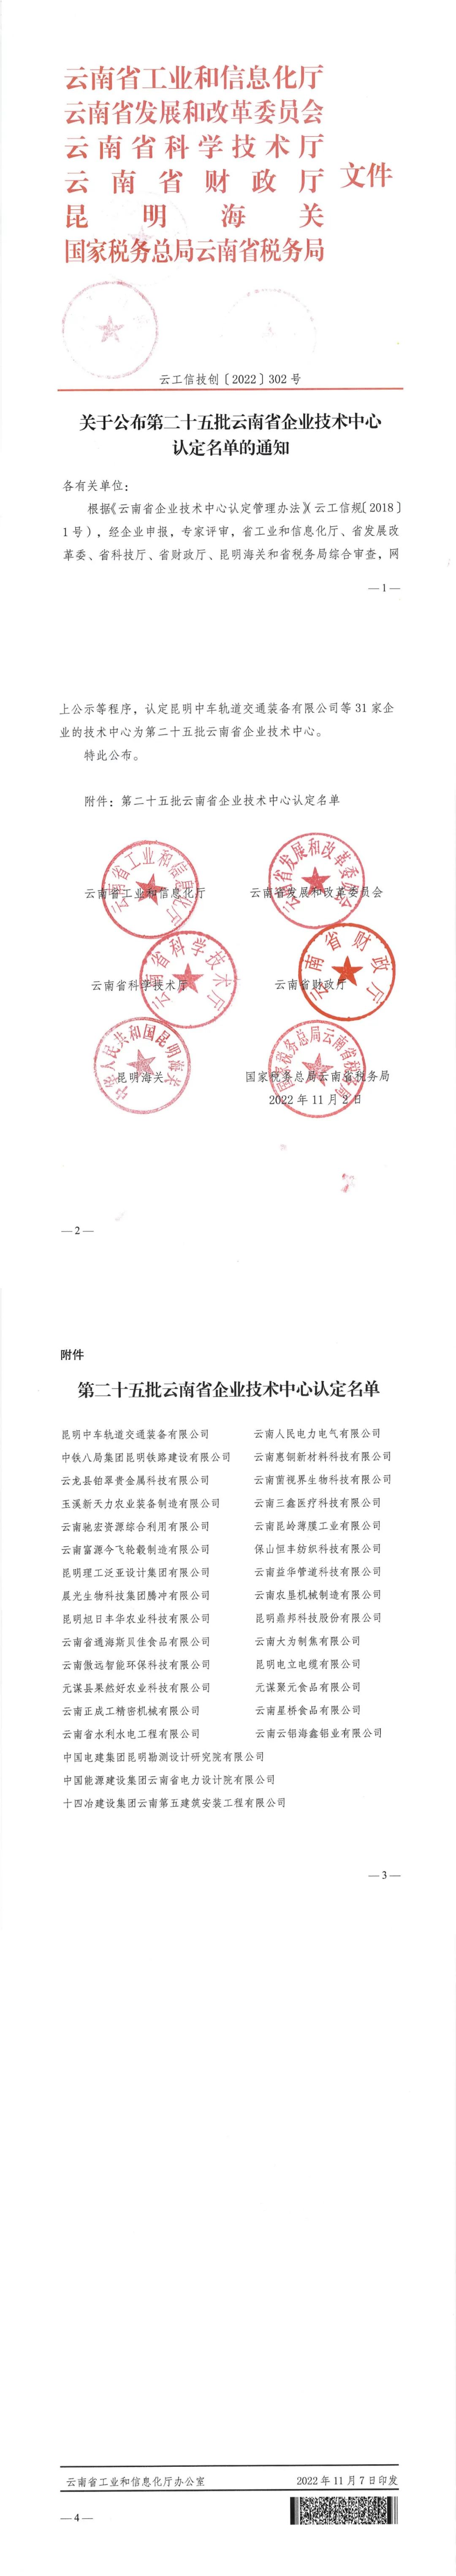 雲鋁海鑫順利通過雲南省企業技術中心認證